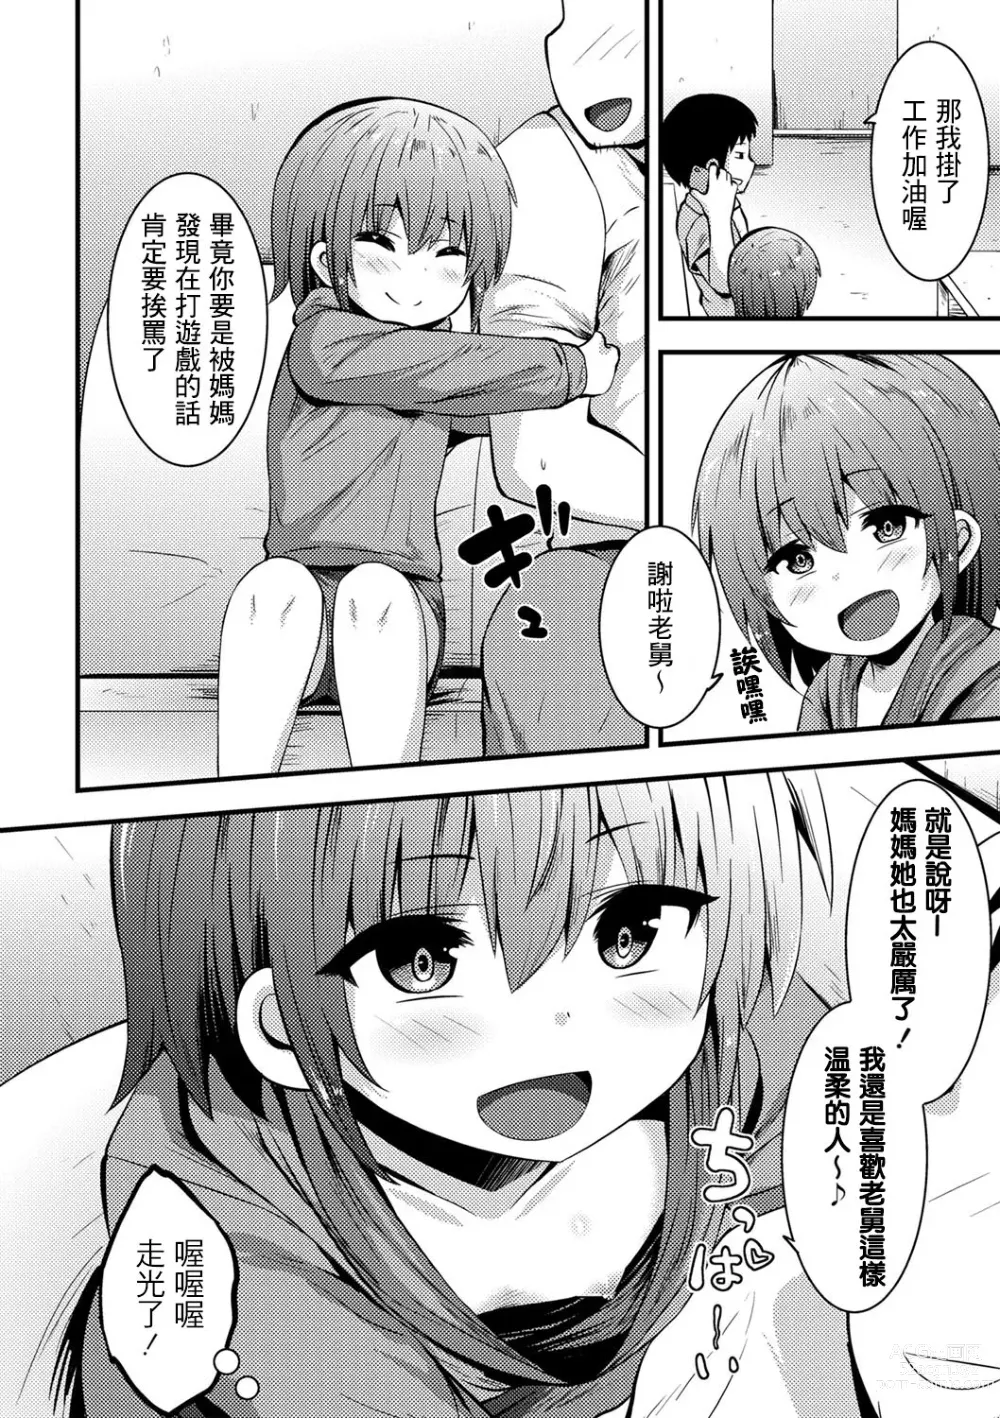 Page 3 of manga Azukari Meikko Time